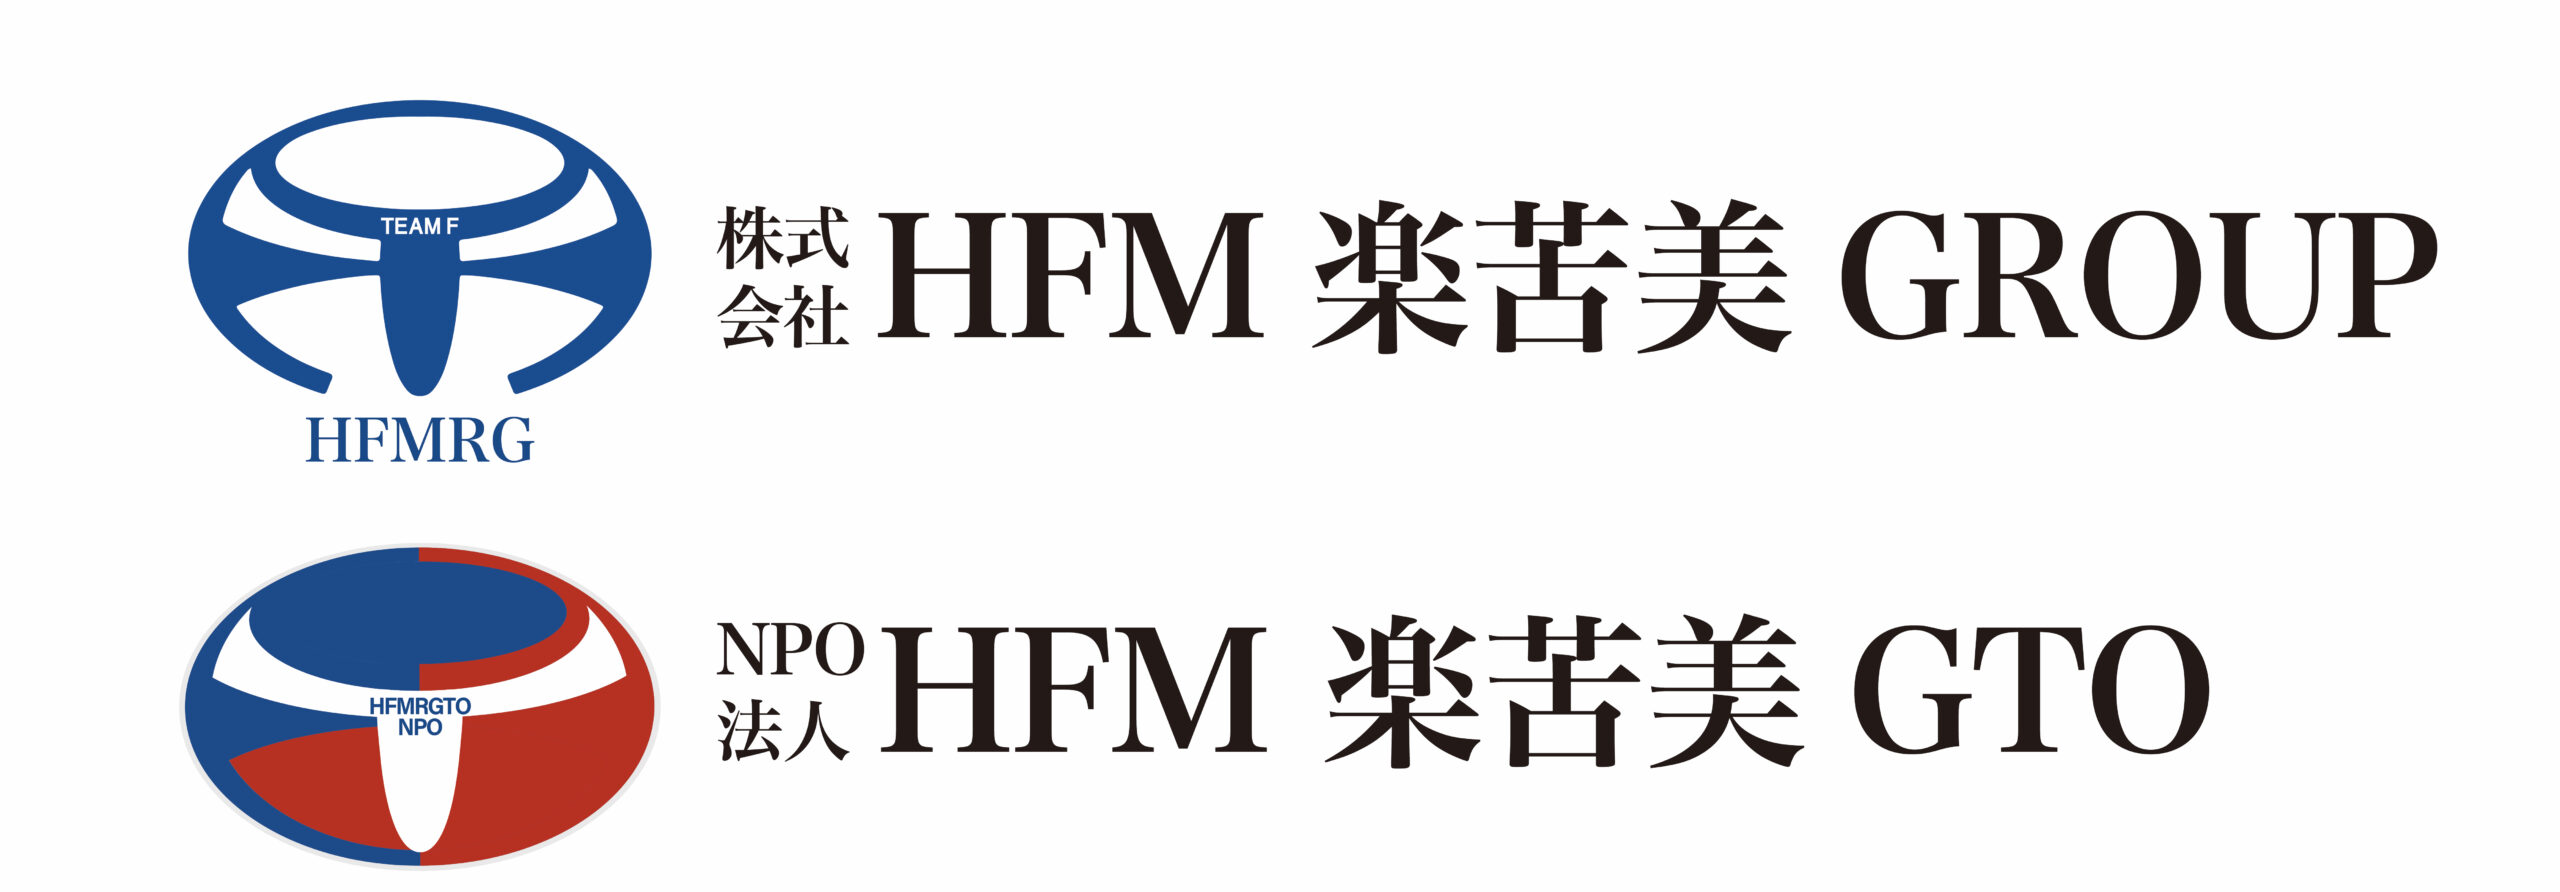 株式会社HFM楽苦美GROUP